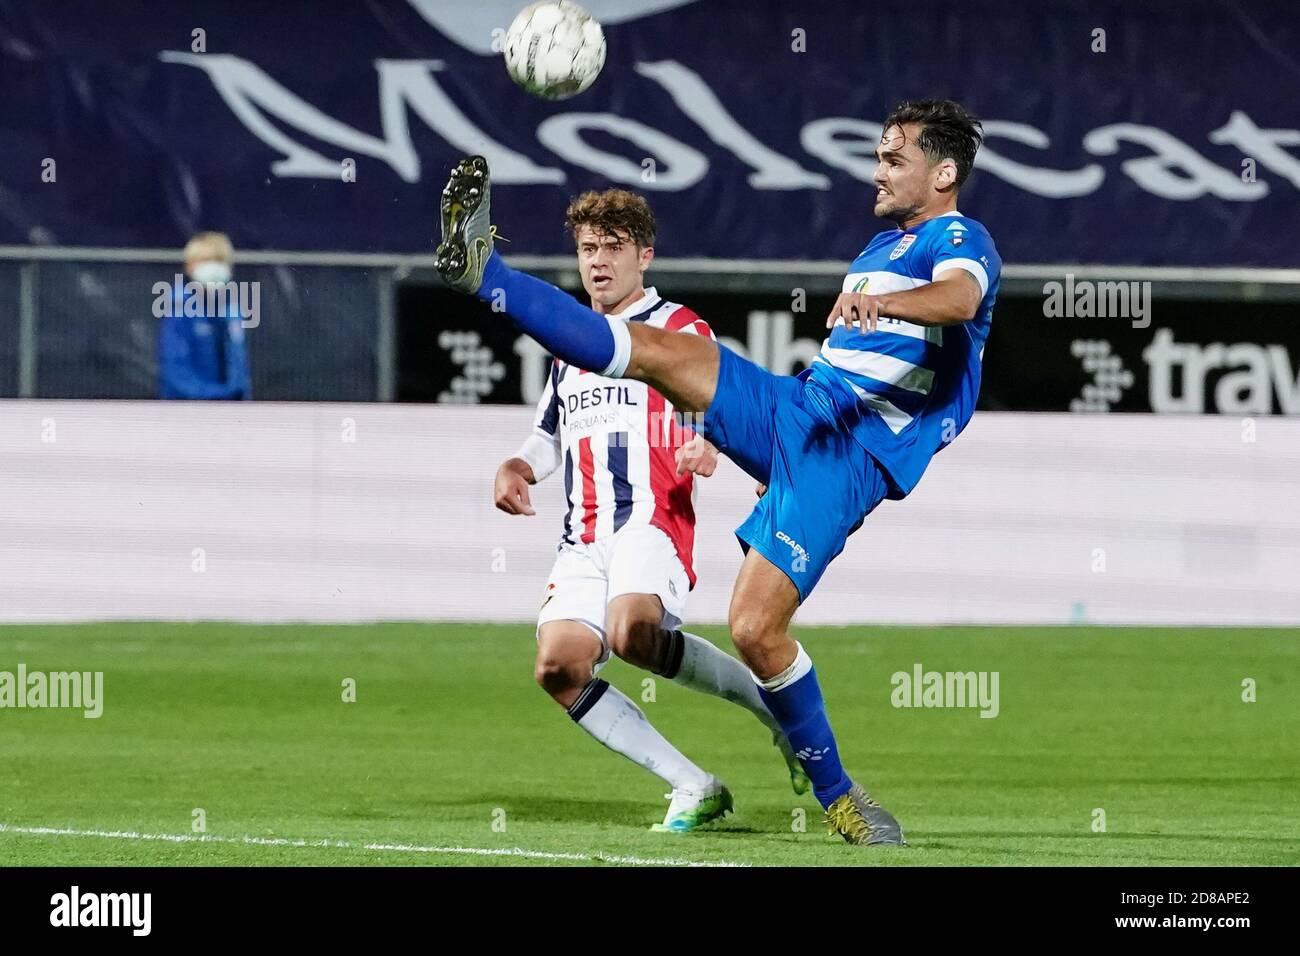 Mat Kohlert de Willem II, Sam Kersten de pec zwolle pendant le championnat néerlandais Eredivisie match de football entre PEC Zwolle et Willem II C. Banque D'Images